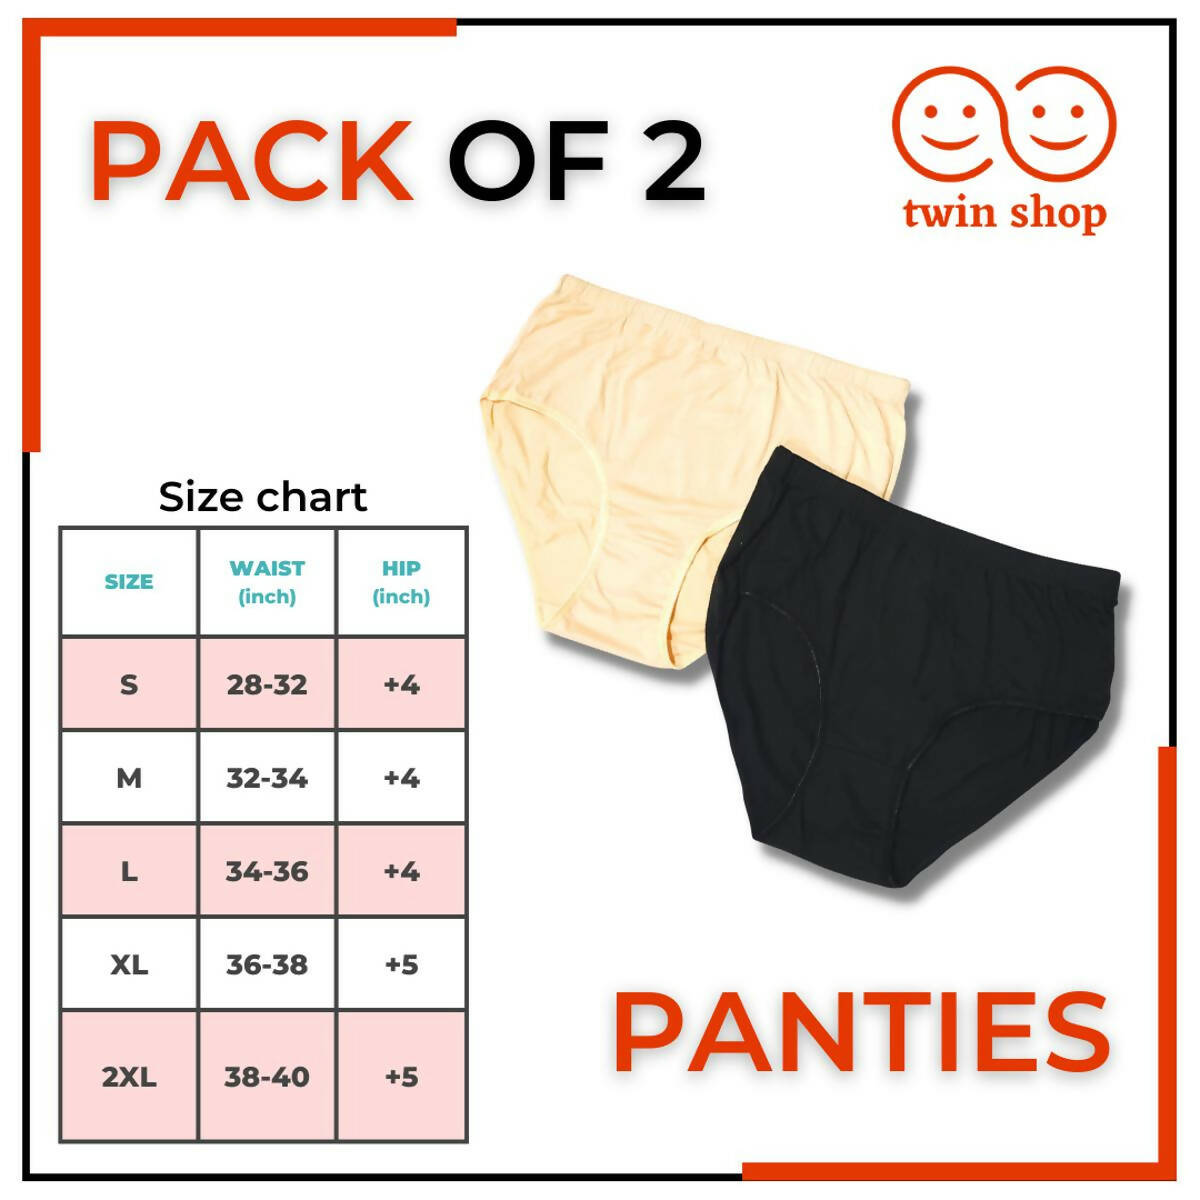 Pack of 2 Underwear Panties for Girls